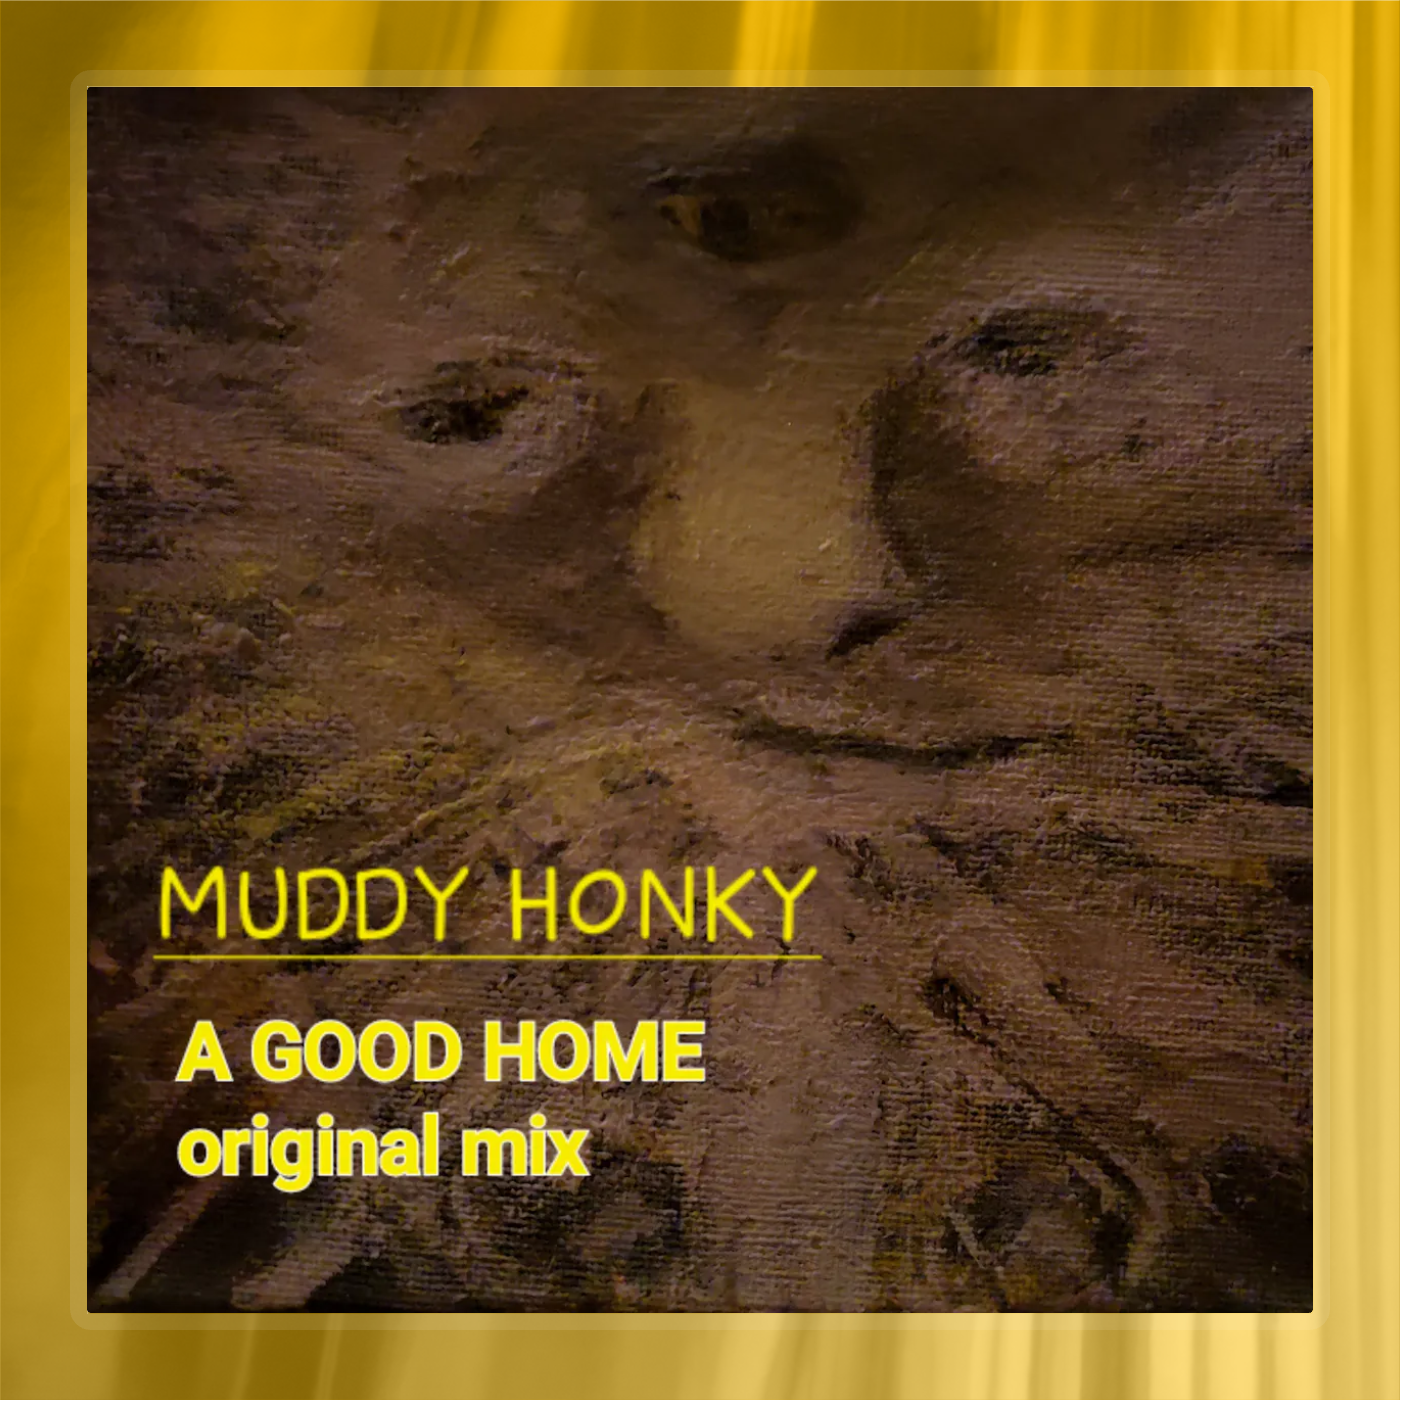 A Good Home (original mix)